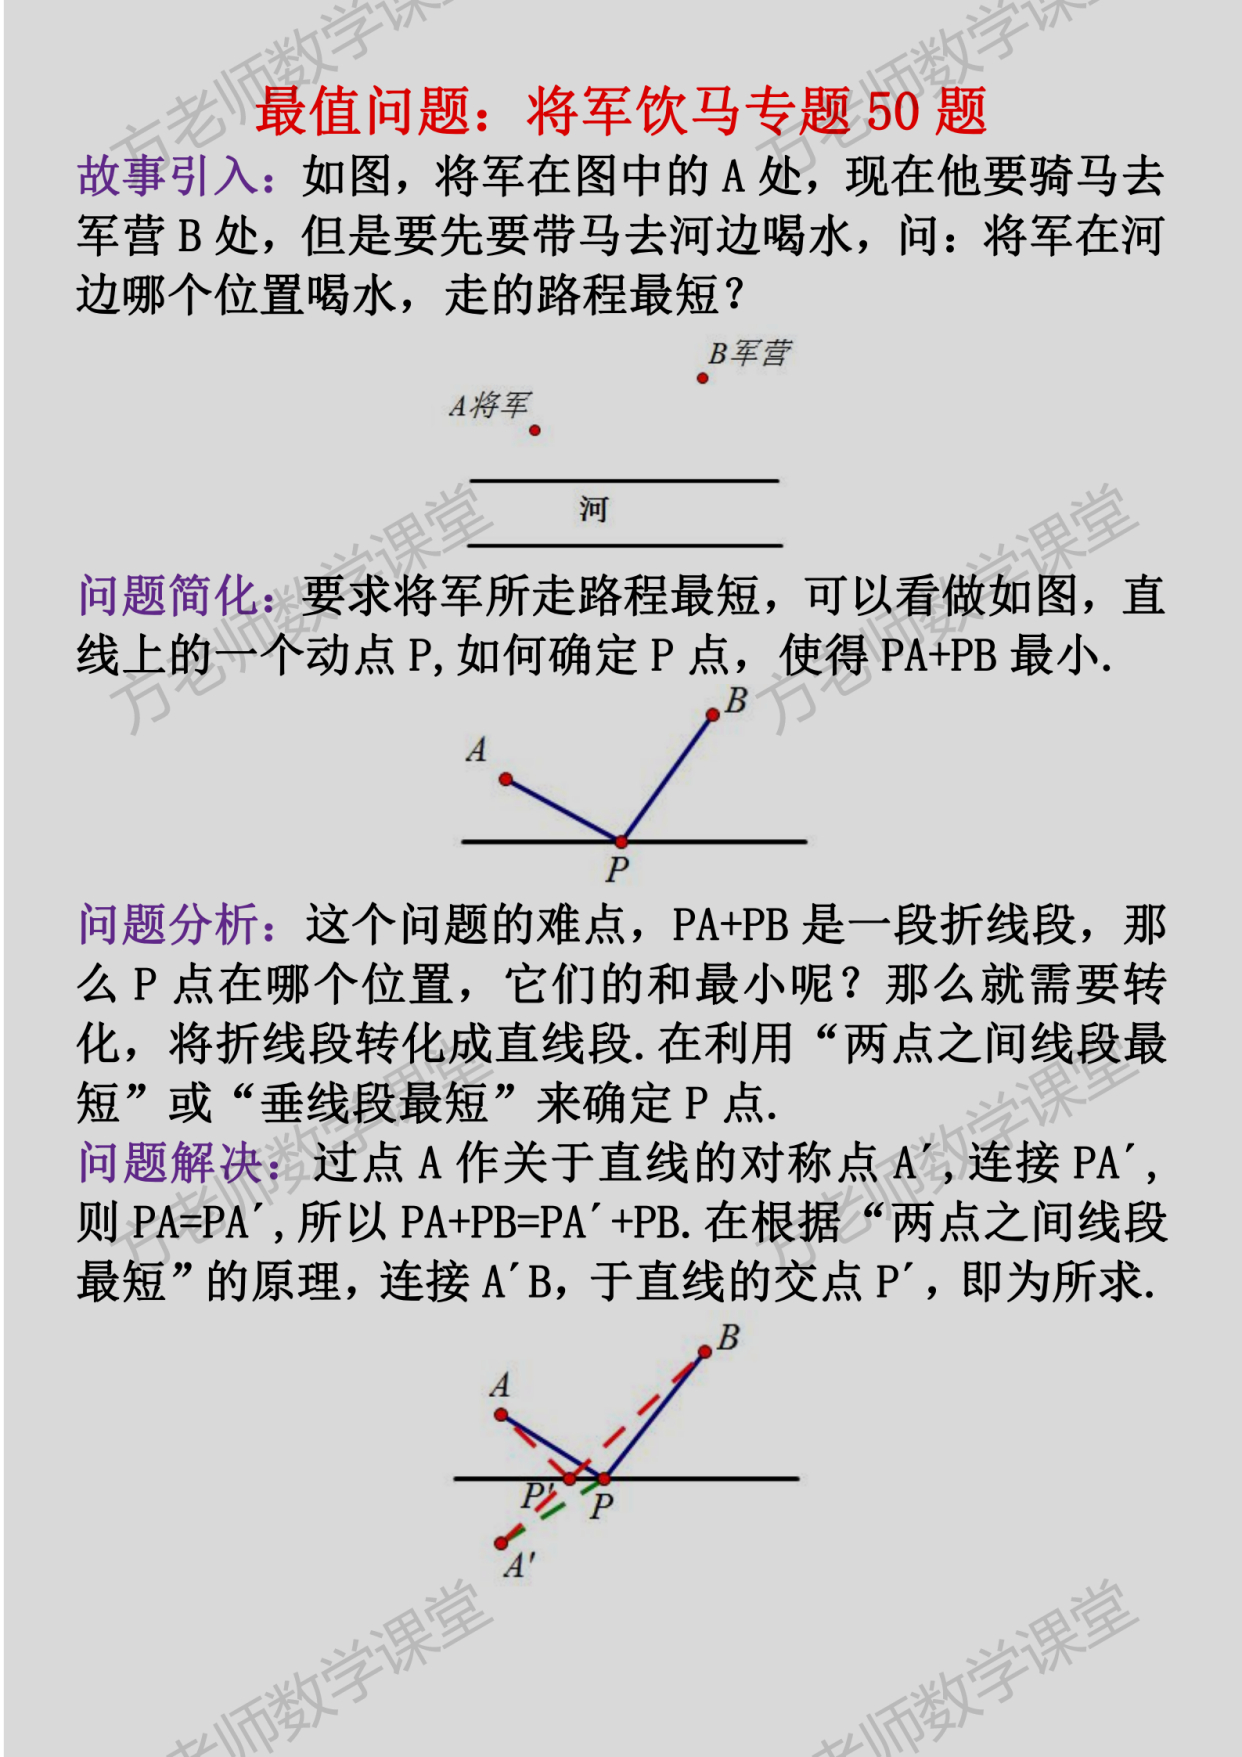 最值问题:将军饮马50题,有电子word档,适用于八年级和中考复习